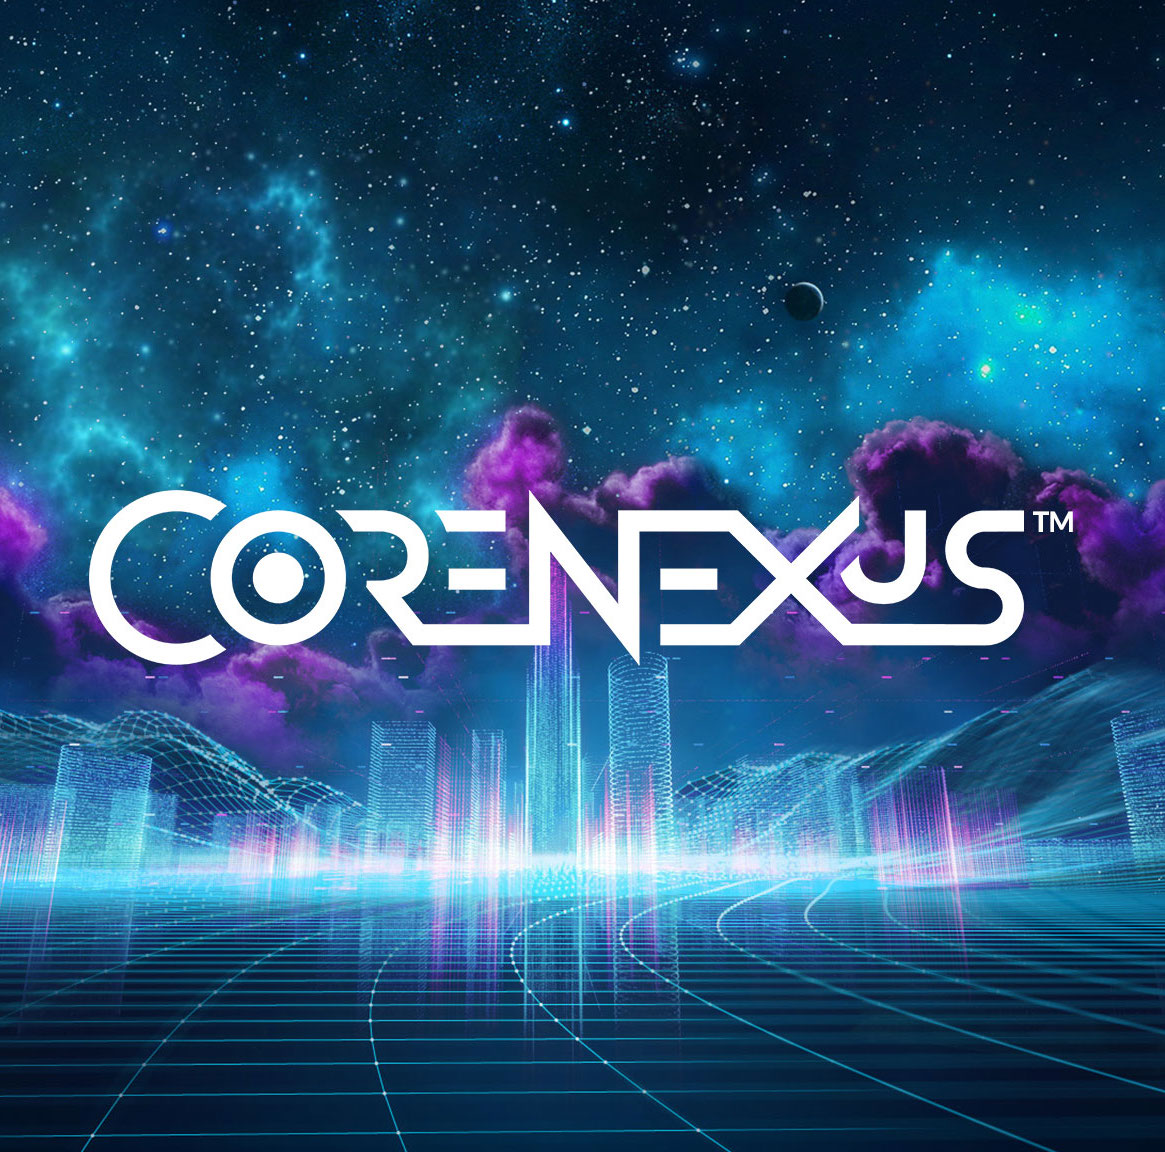 CoreNexus™